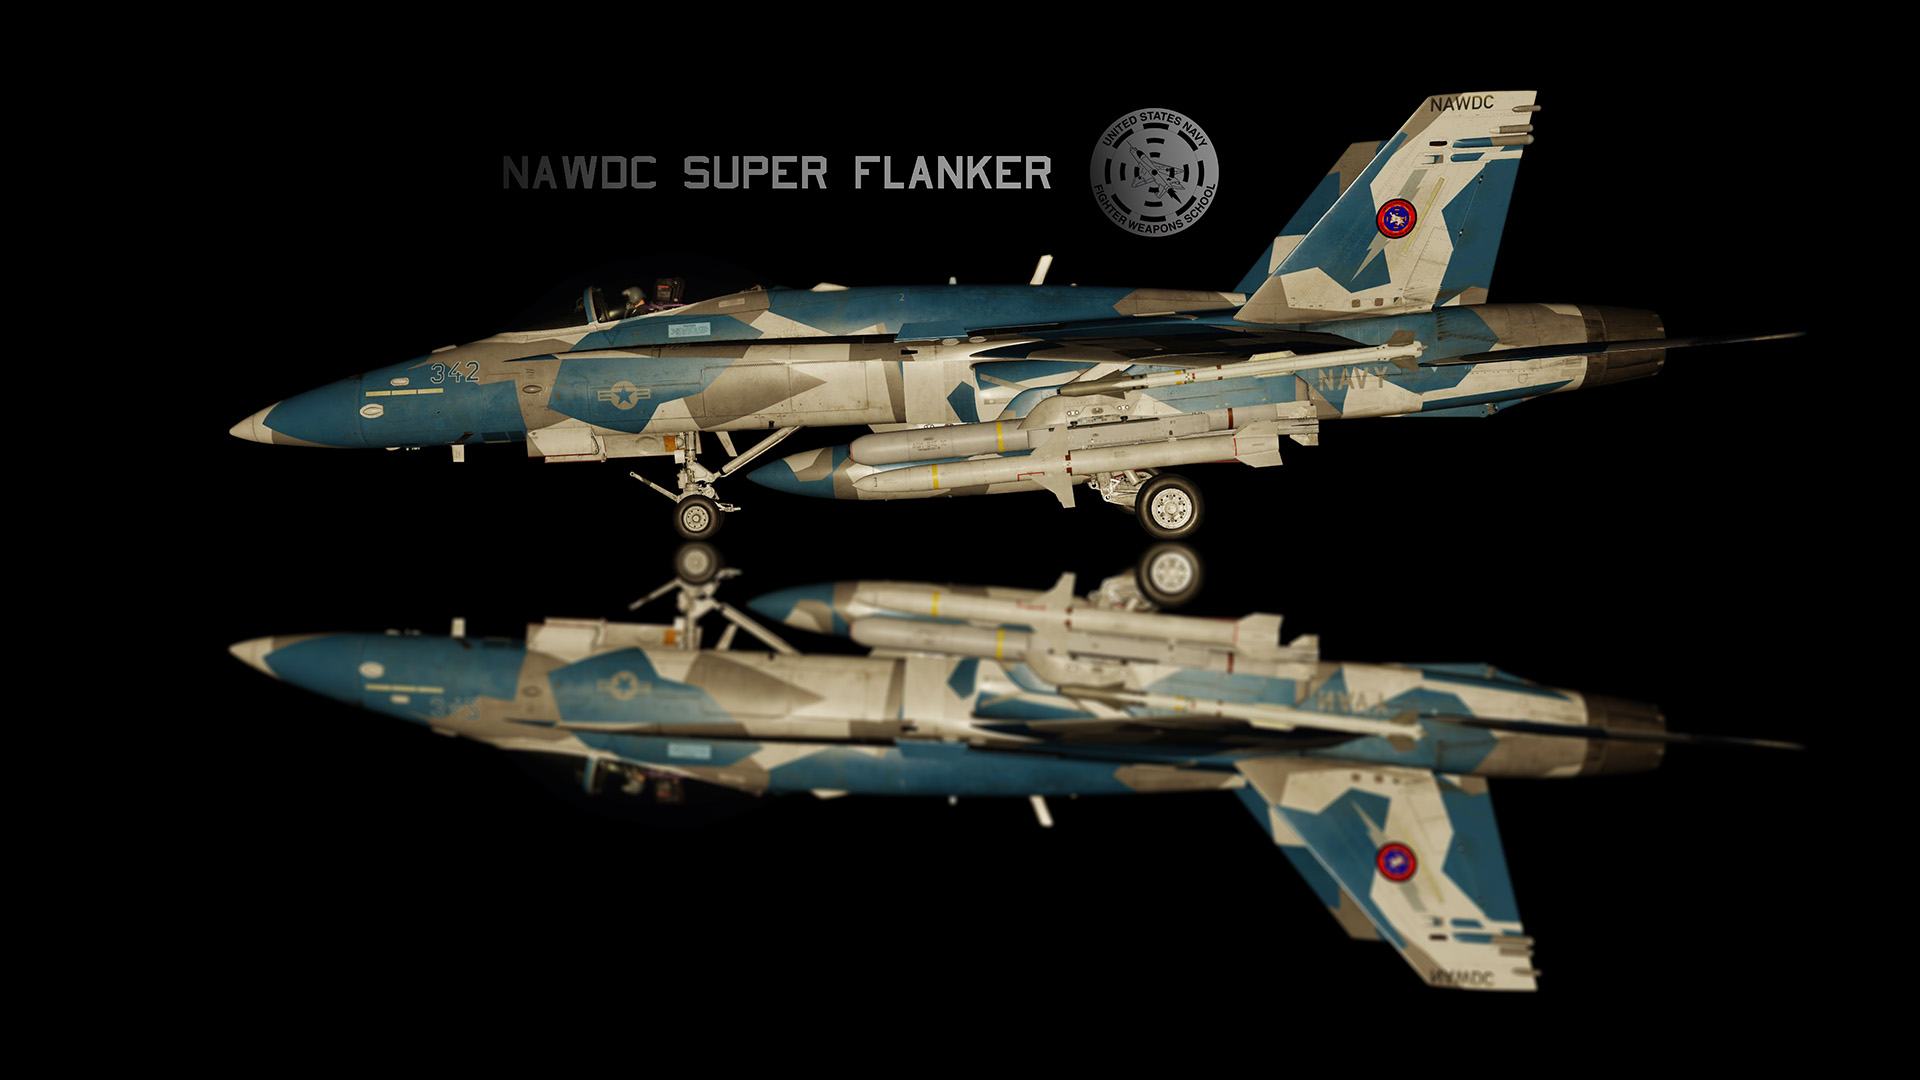 Fictional NAWDC Super Flanker skin